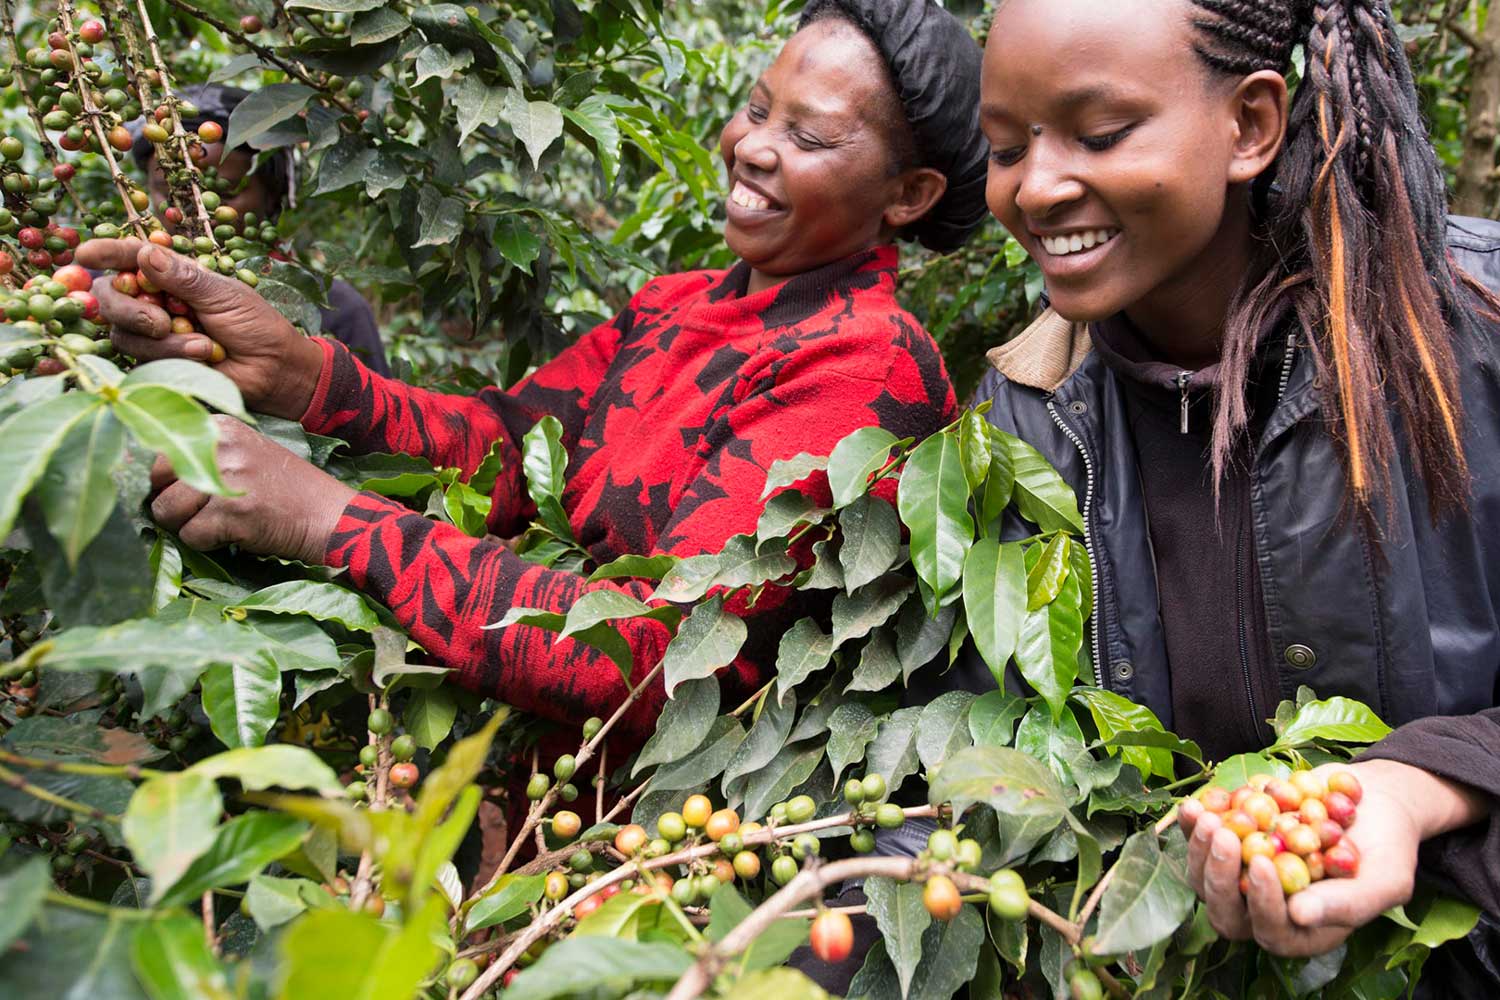 Globale Kaffee-Nachhaltigkeitsprogramme In den letzten Jahren hat Nestlé 15.000 Frauen in Ostafrika Wissen über gute landwirtschaftliche Praktiken, Finanzkompetenz und Führungsqualitäten vermittelt. Mit ihren neuen Fähigkeiten können diese Frauen ihr Einkommen verbessern. Größere finanzielle Unabhängigkeit stärkt nicht nur die Frauen selbst, sondern ist auch wegweisend für Mädchen und Frauen in der Zukunft.